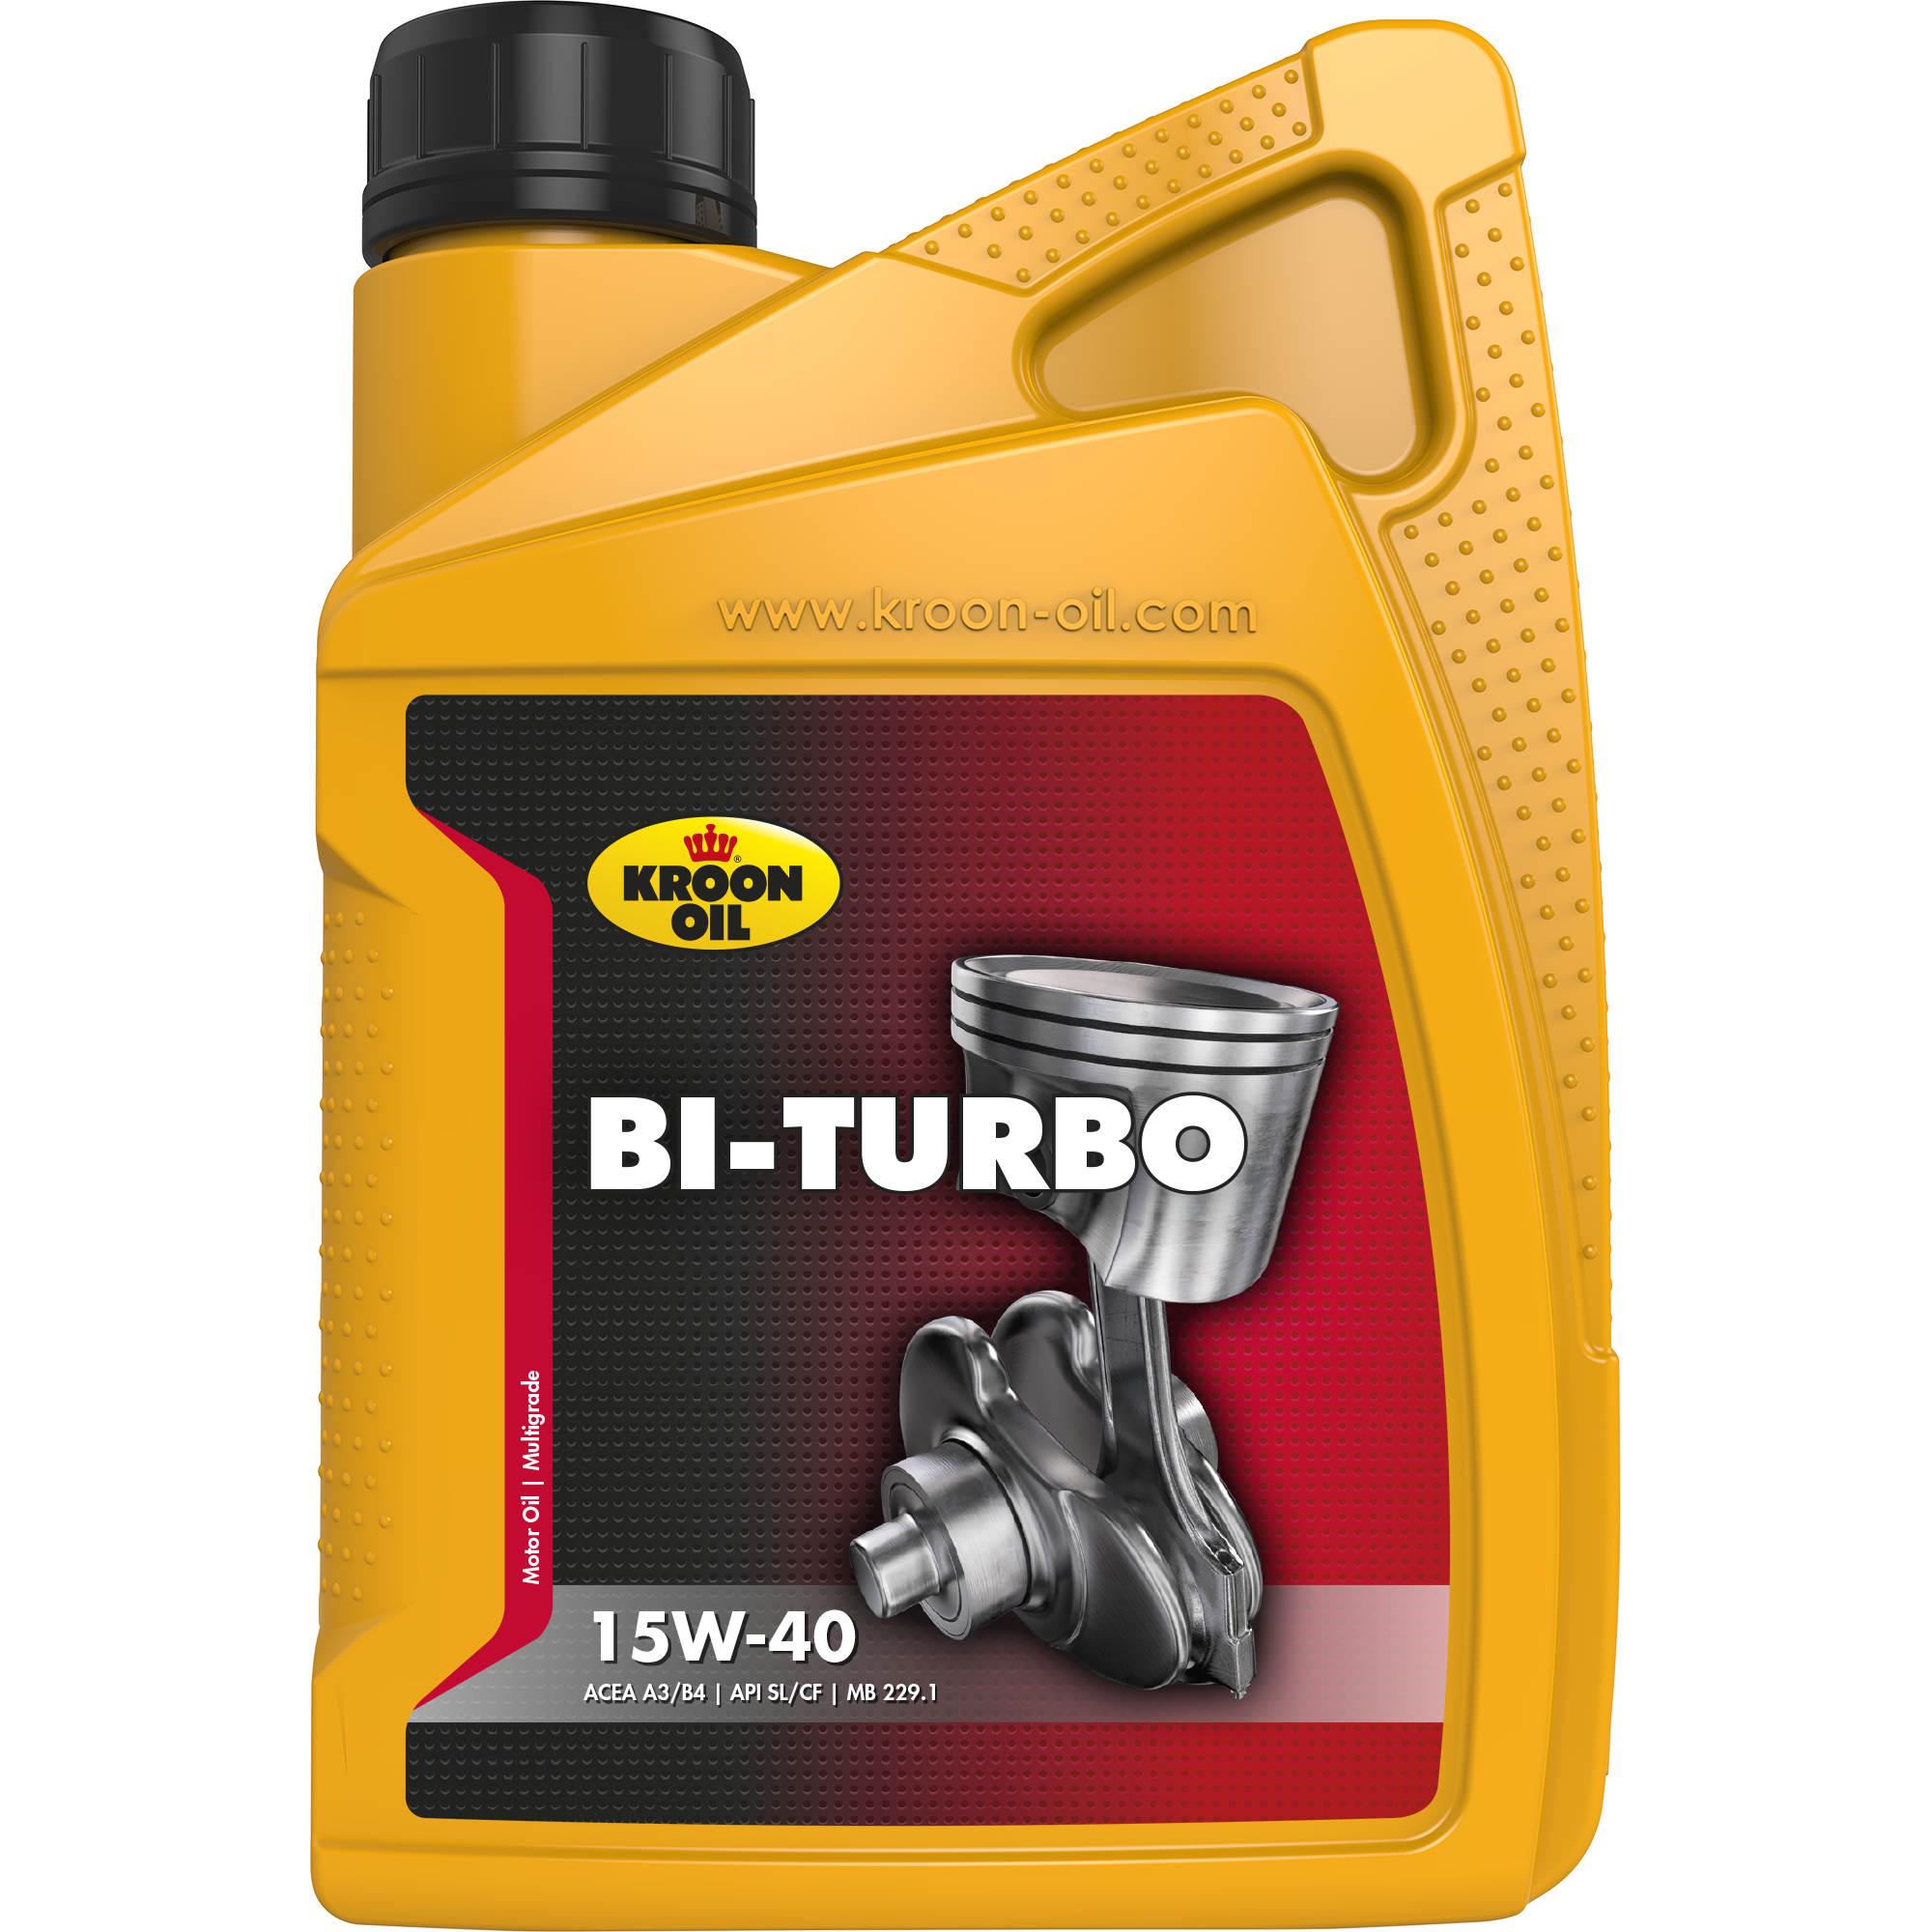 00215-1 Bi-Turbo 15W-40 is een universele minerale motorolie, gebaseerd op hoogwaardige solvent geraffineerde basisoliën.